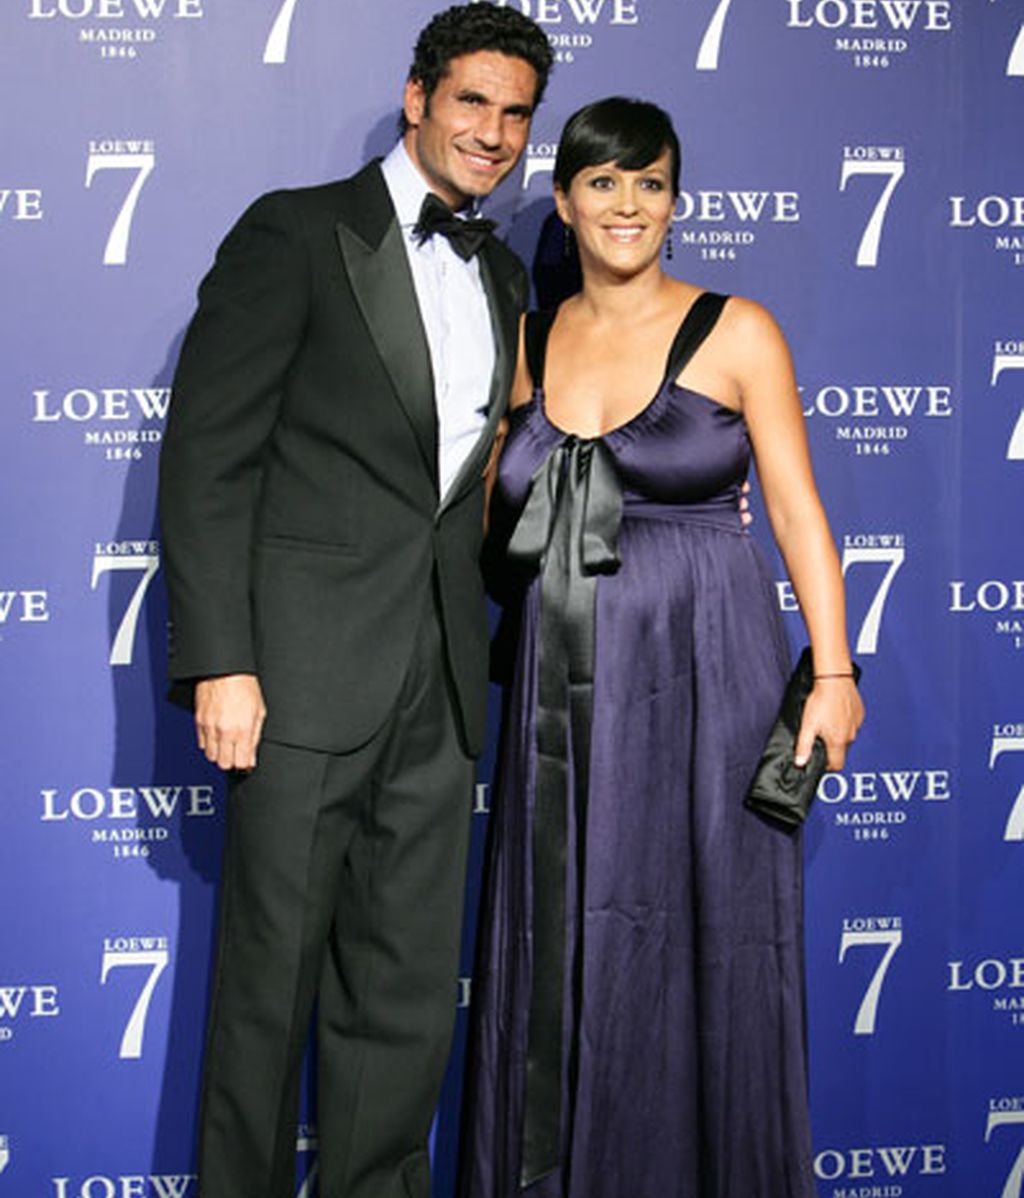 Cayetano Rivera y Eva González, protagonistas de un elenco de lujo en la fiesta de Loewe